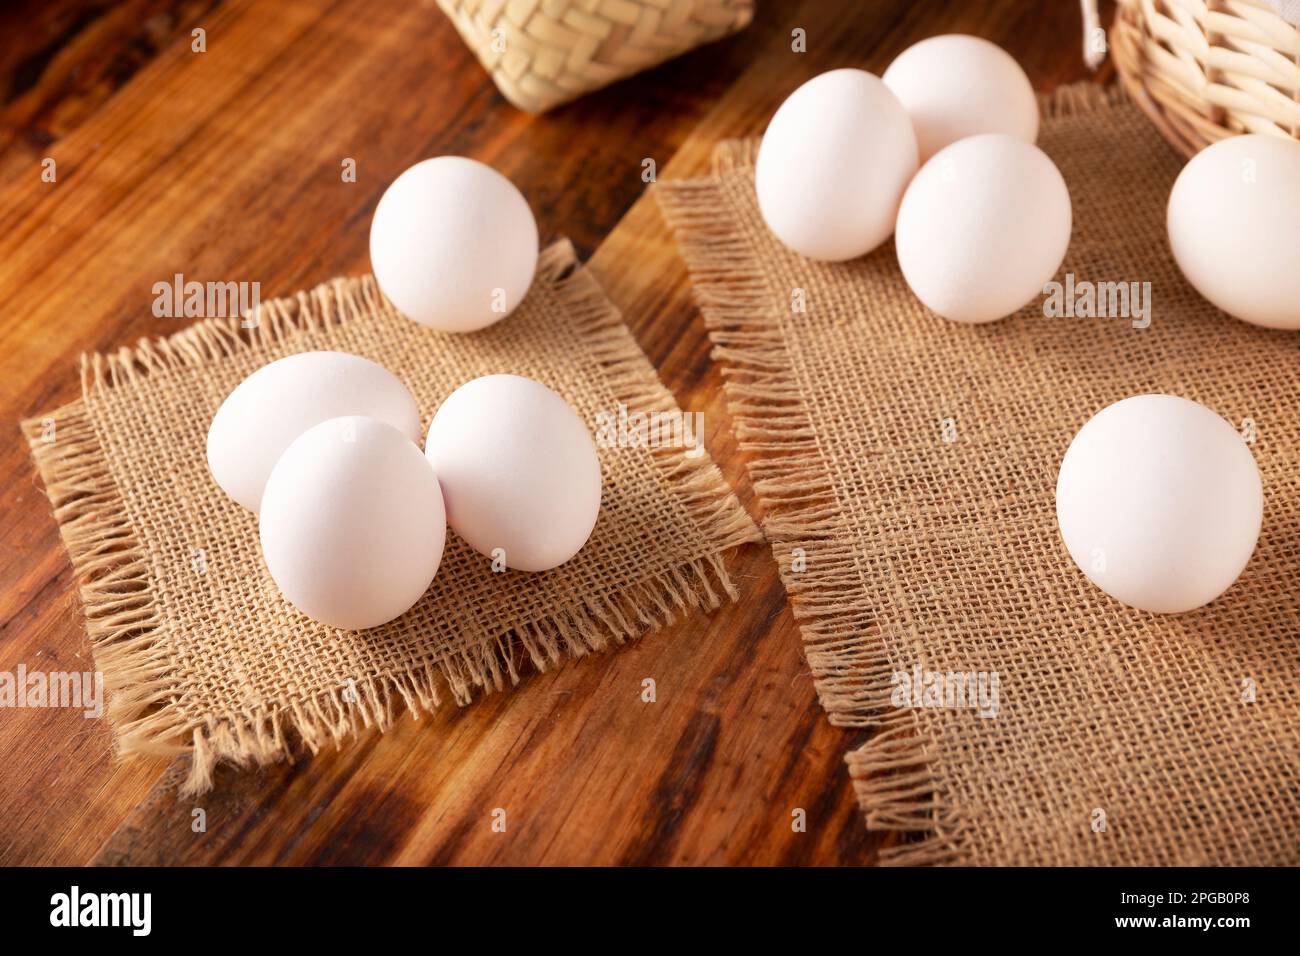 Molte uova bianche di pollo su un tavolo rustico di legno. Prodotto alimentare nutriente ed economico molto popolare. Foto Stock